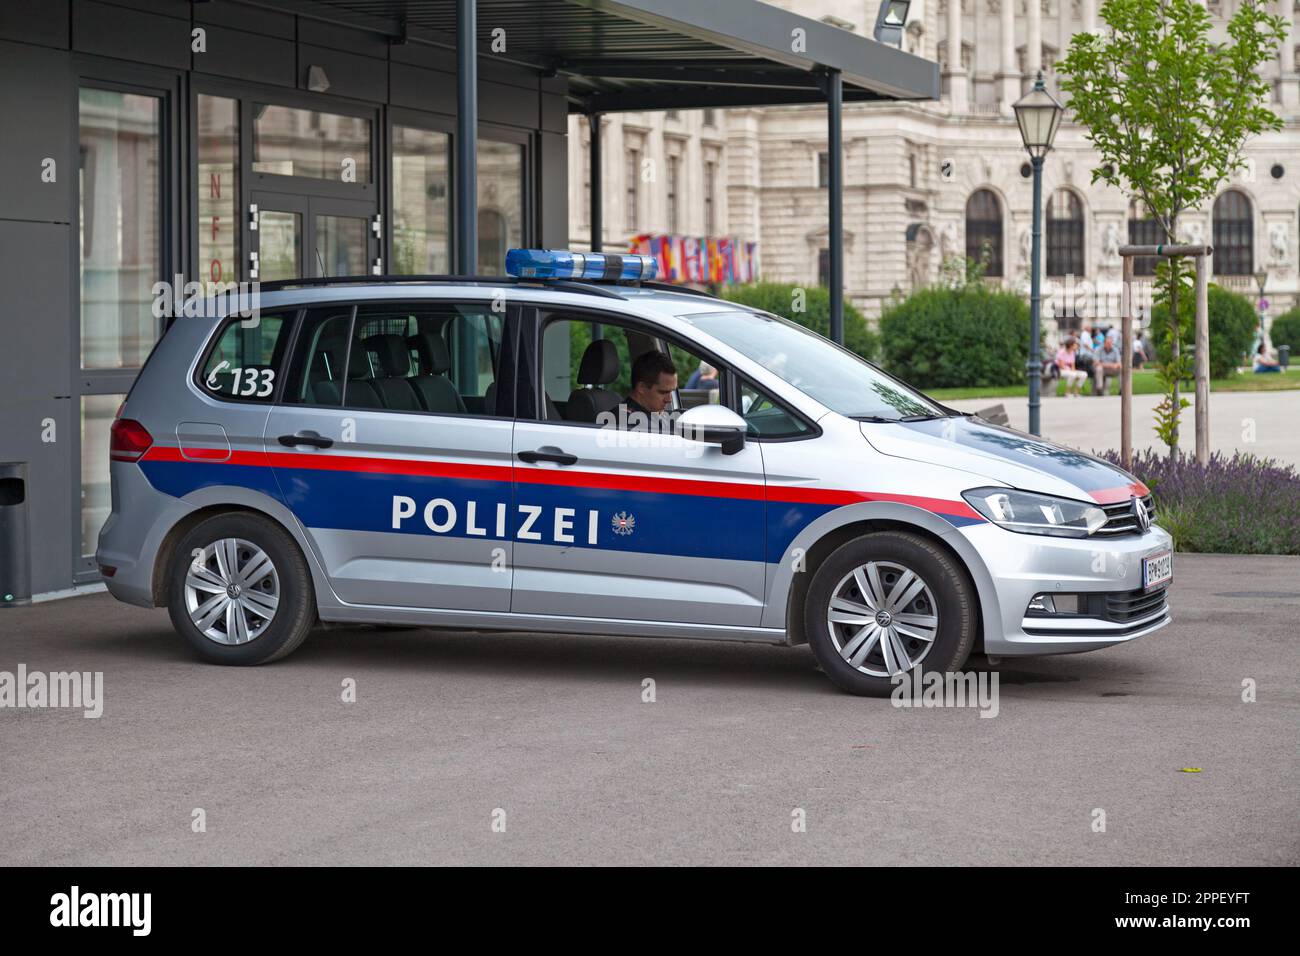 Vienne, Autriche - 17 juin 2018 : policier qui attend dans sa voiture près du palais Hofburg. Banque D'Images